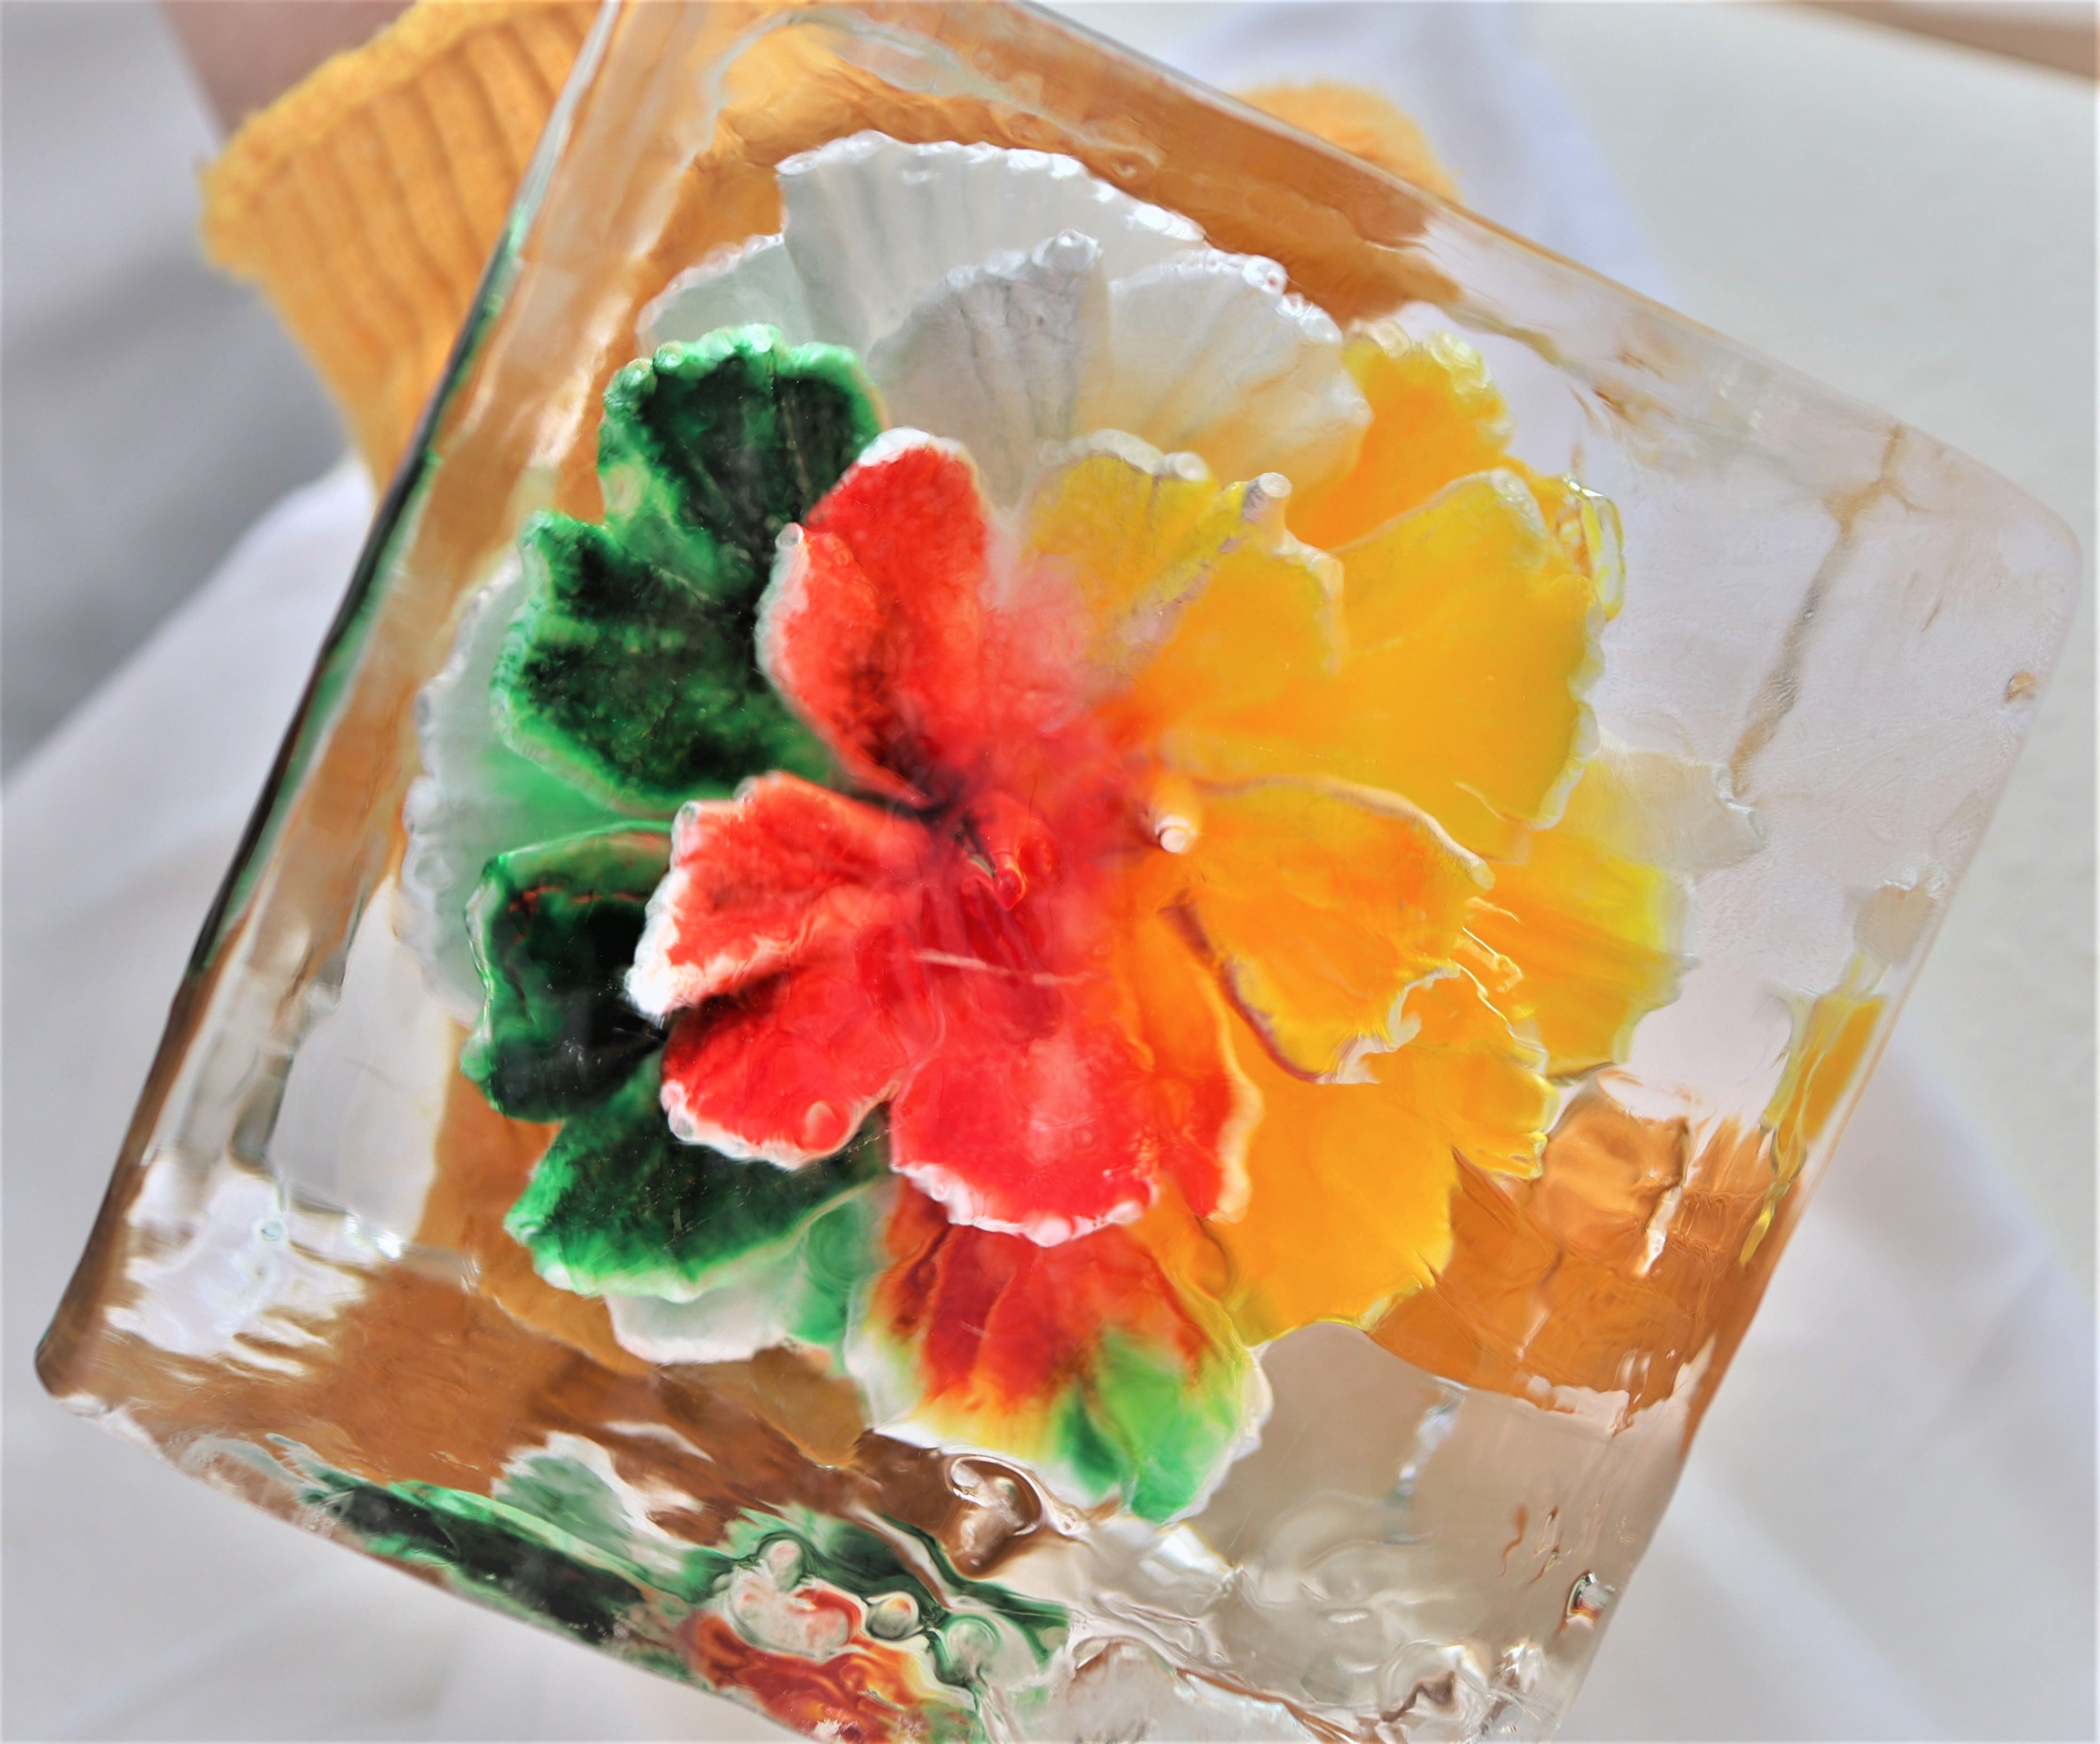 どんな色の氷の花が咲くかな お子さまと一緒に楽しめる夏限定イベント Futako Ice Flower を開催 エクセルホテル東急のプレスリリース